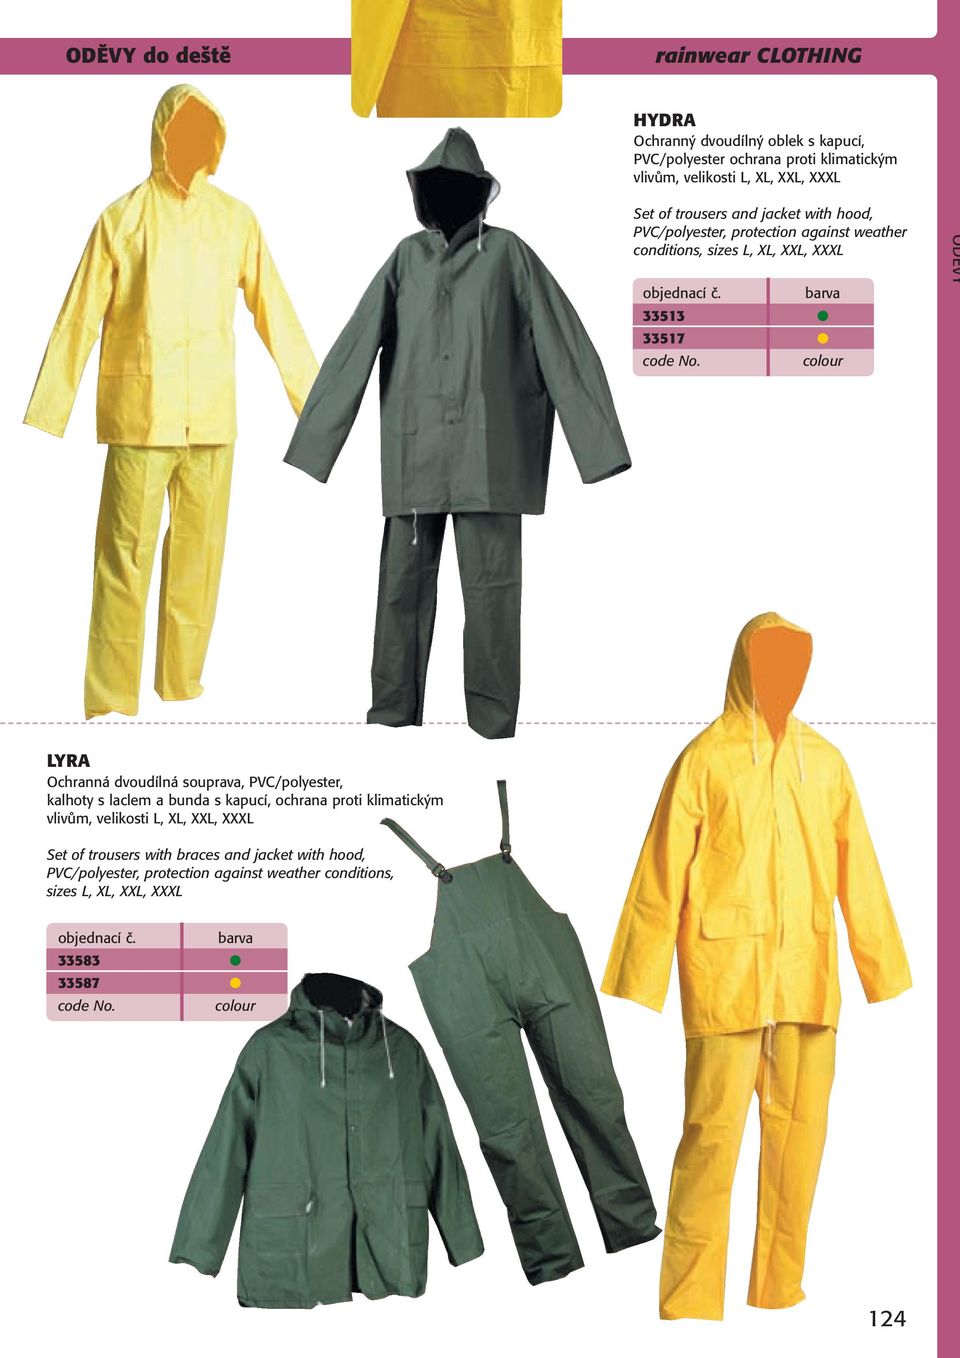 LYRA Ochranná dvoudílná souprava, PVC/polyester, kalhoty s laclem a bunda s kapucí, ochrana proti klimatickým vlivům, velikosti L, XL, XXL,